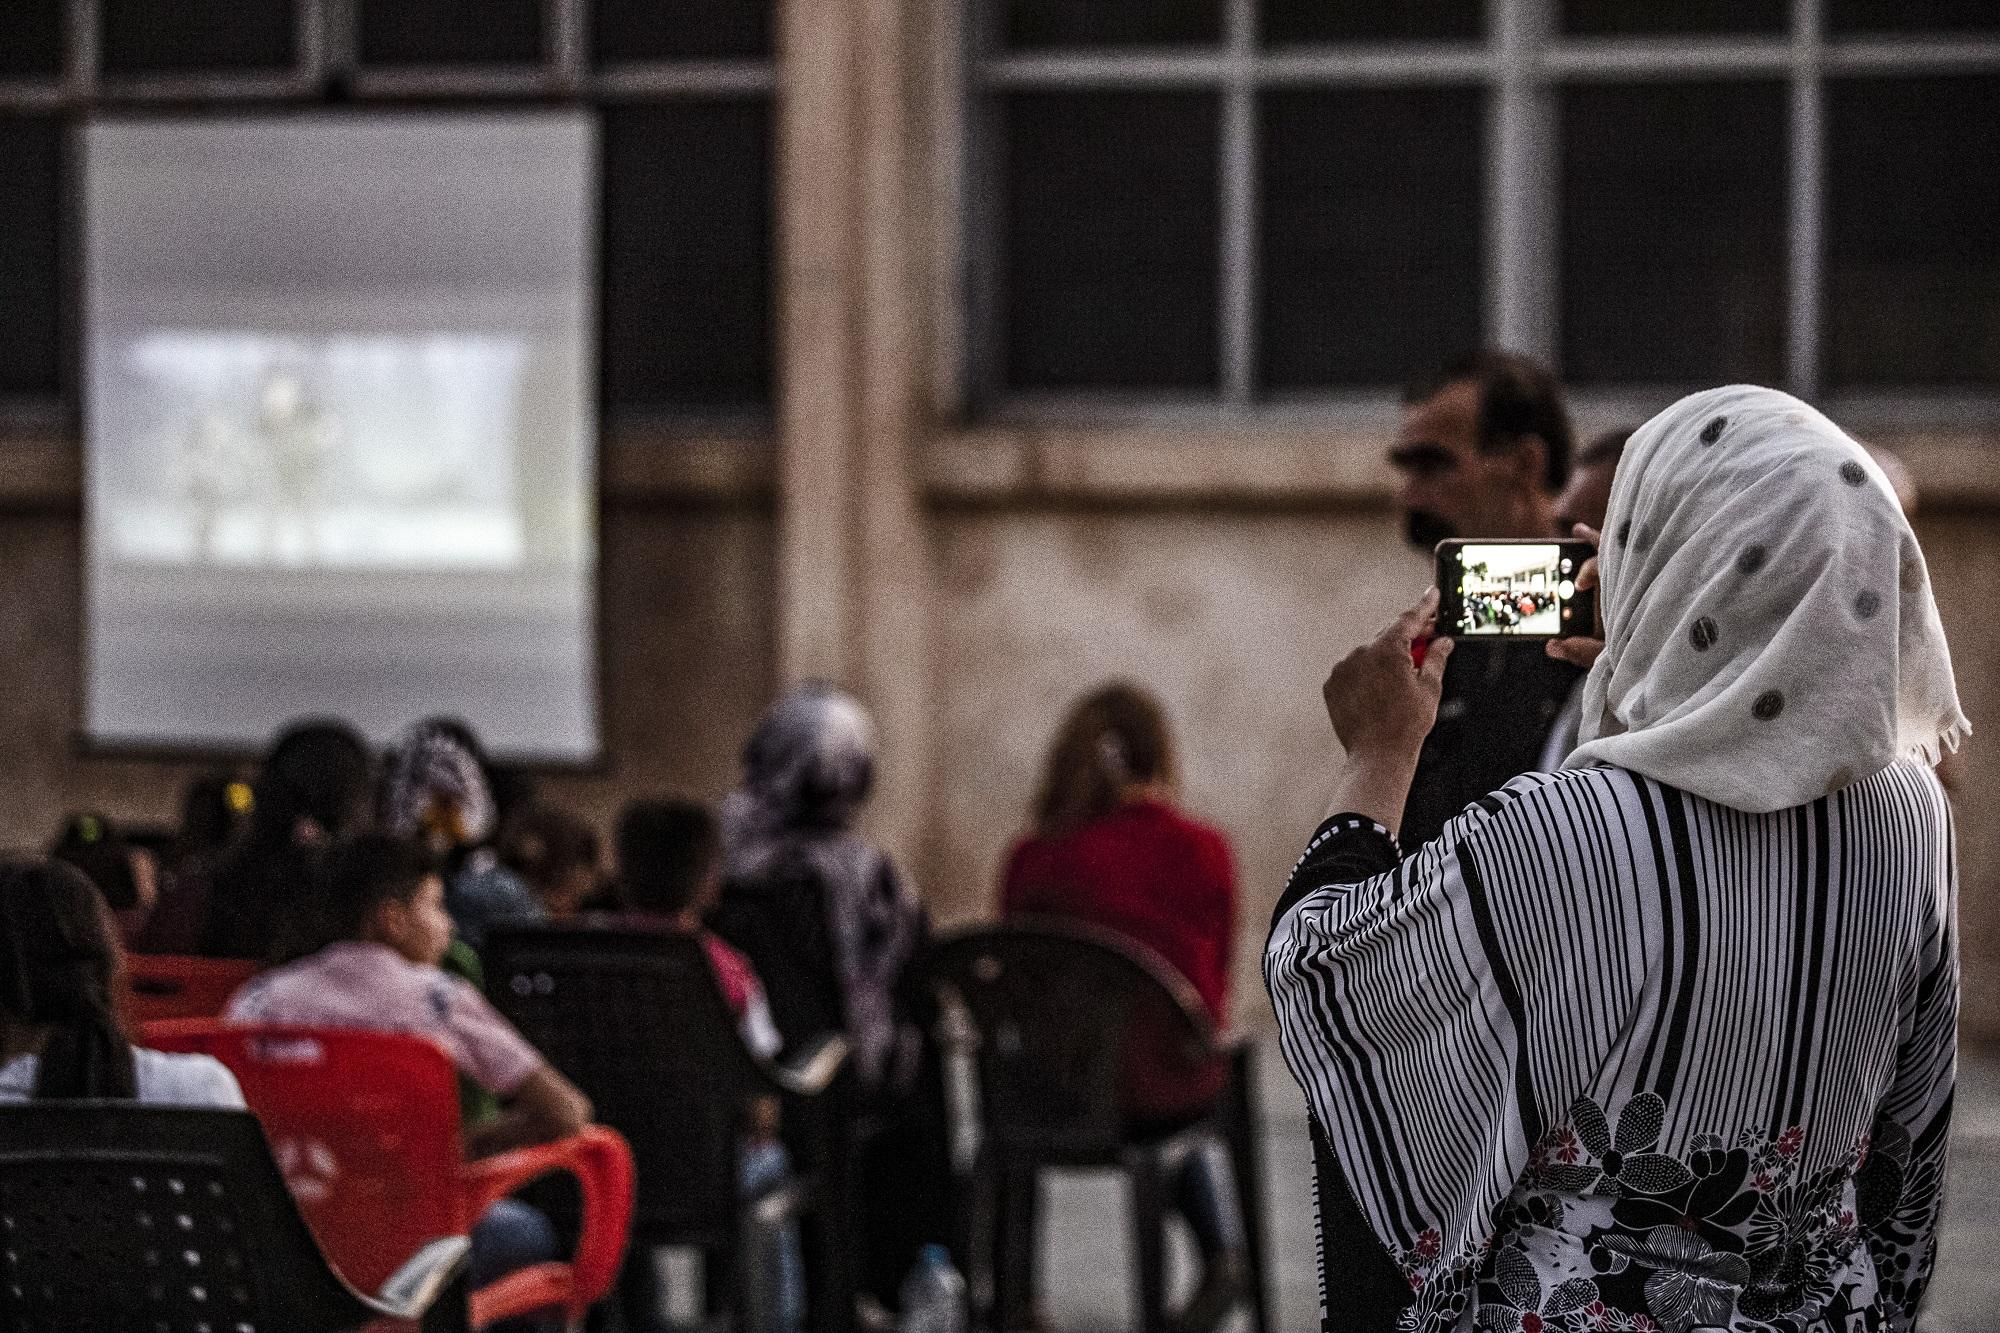 سيدة تستخدم هاتفًا خلويًا لتصوير فيديو لأطفال يتابعون عرضا للسينما المتنقلة في باحة مدرسة في الحسكة، شمال شرق سوريا. 28 يوليو 2019. (أ ف ب)